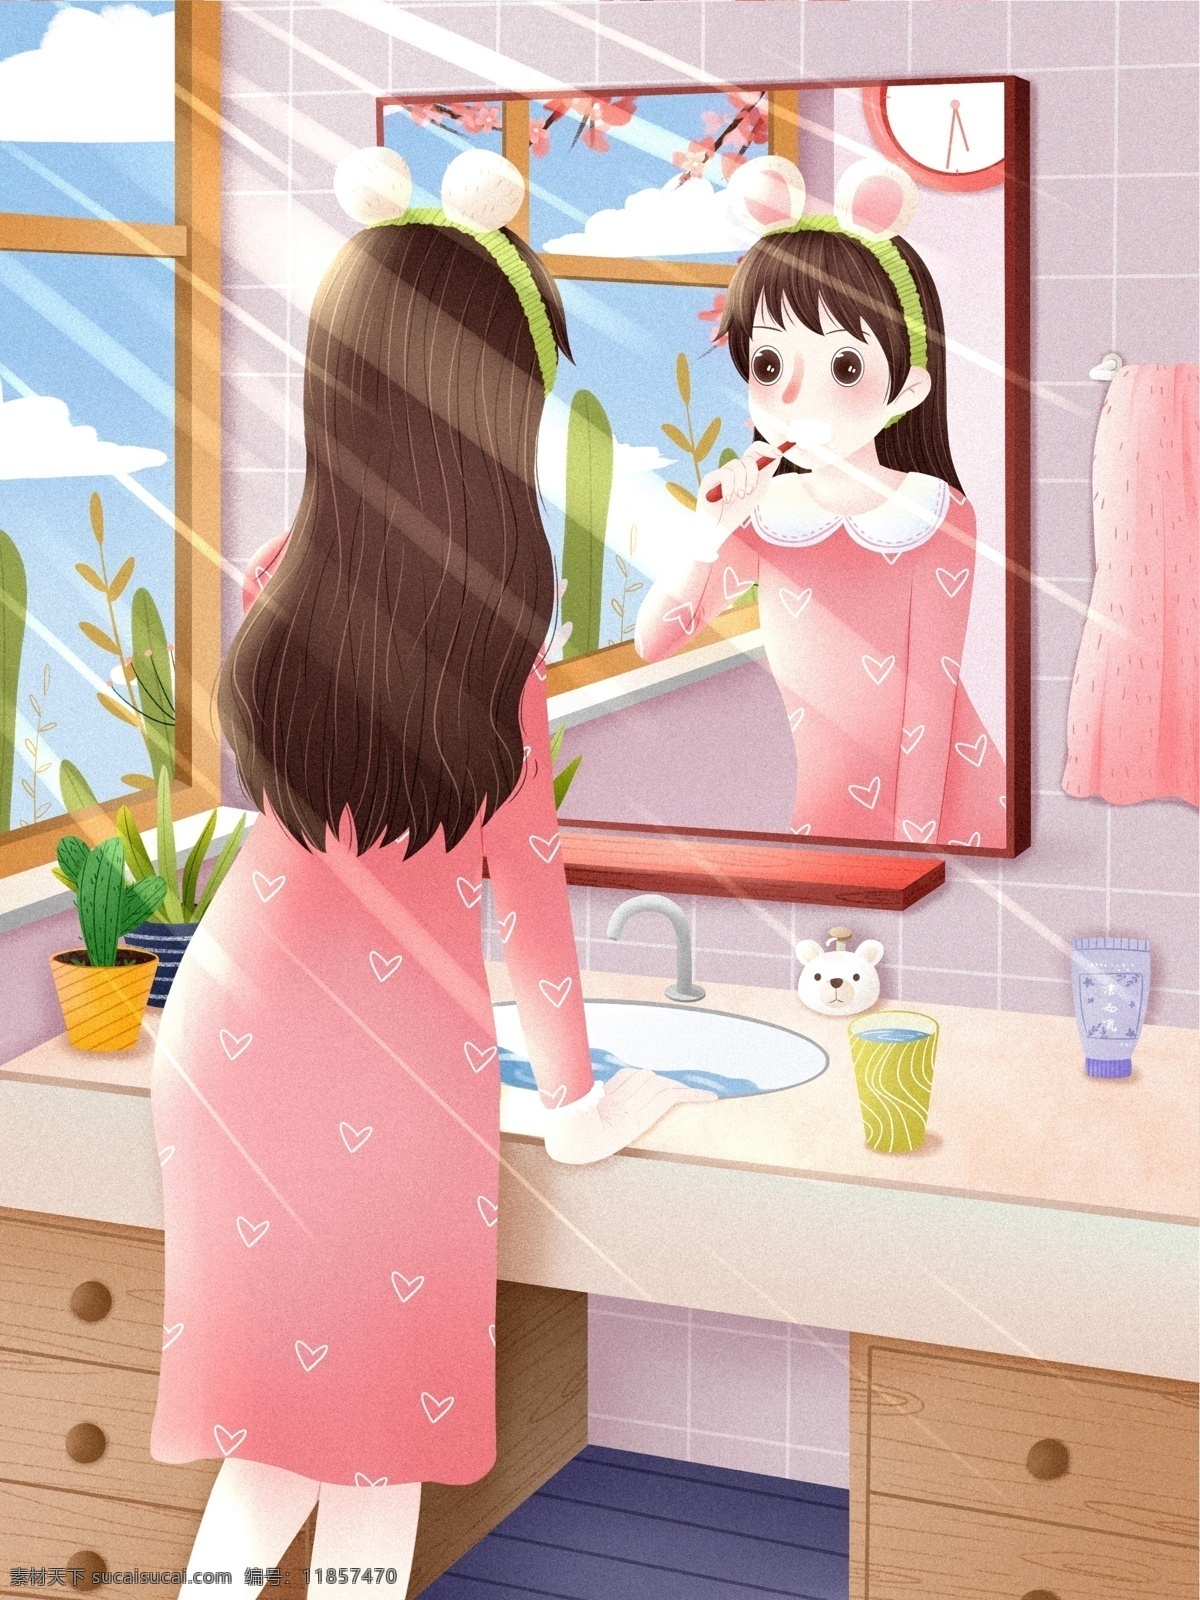 早安 早上 刷牙 洗脸 洗漱 起床 女孩 可爱 治愈 插画 小清新 温馨 温暖 创意海报 早起 正能量 早